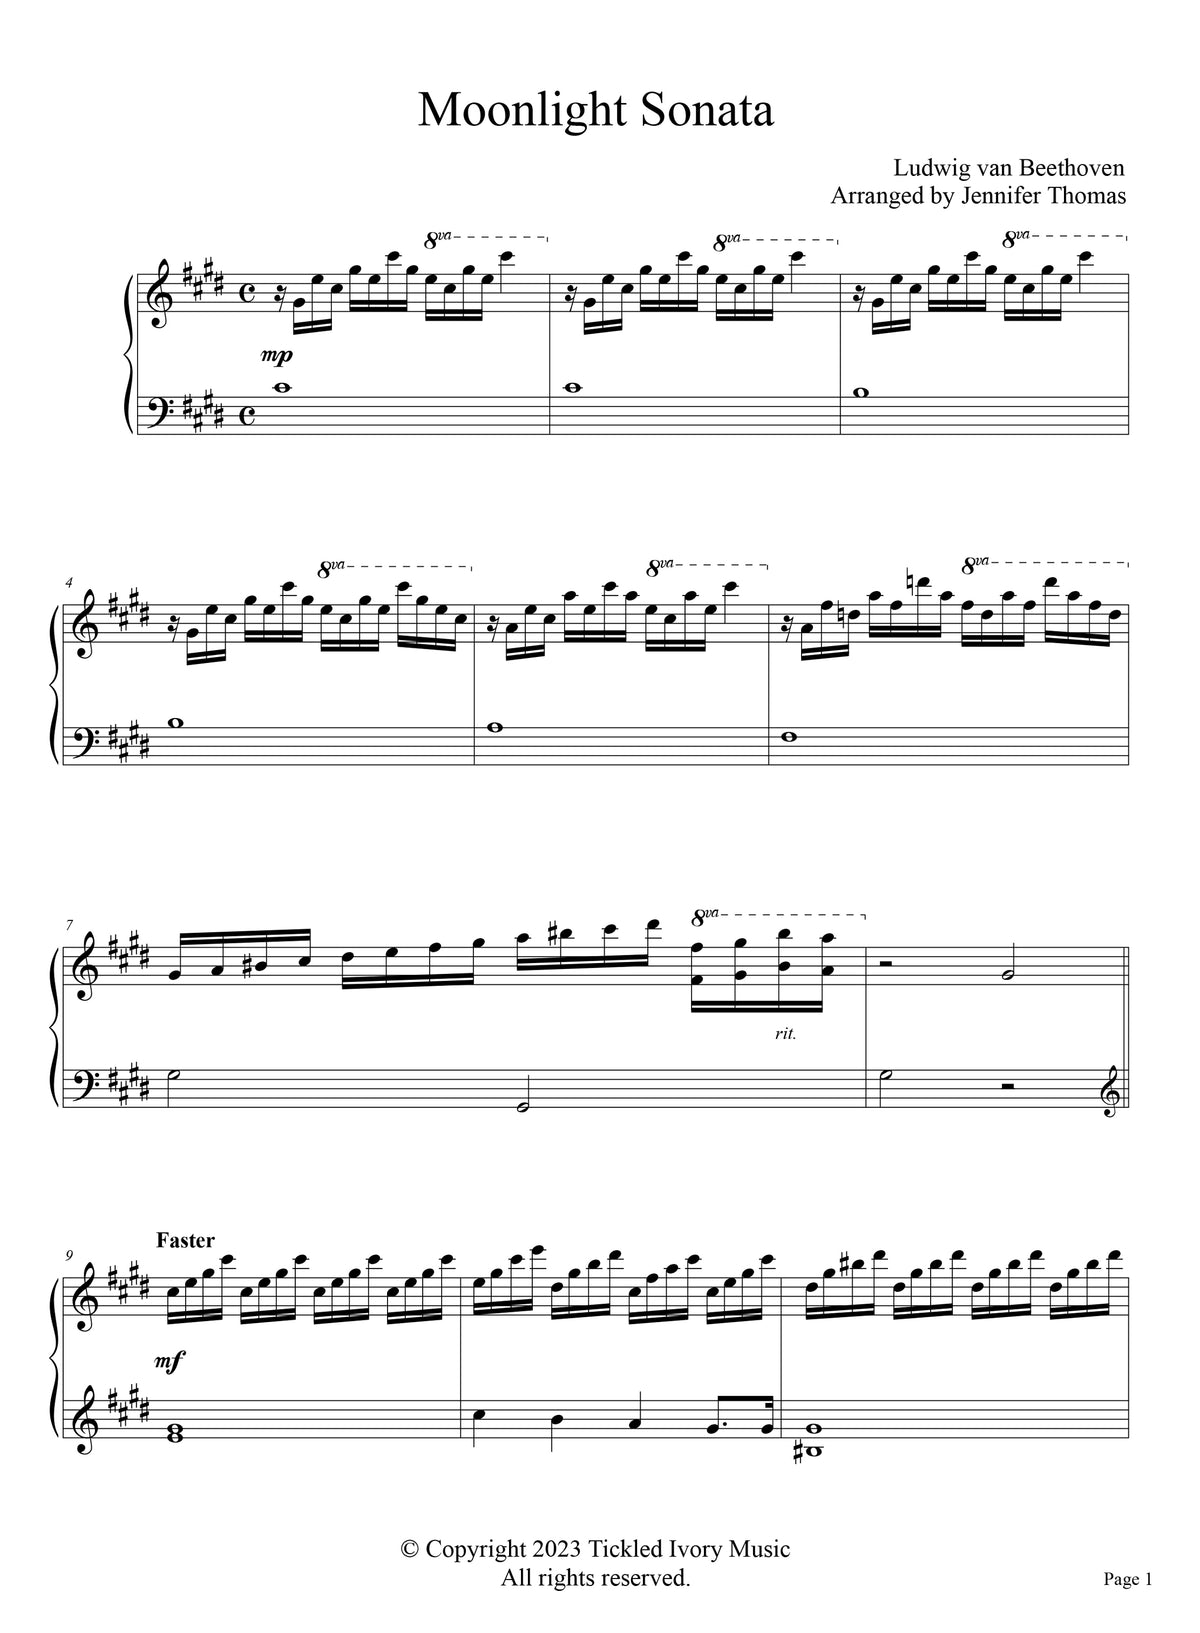 Clásico reinventado, vol. 1 cancionero impreso para piano solo.